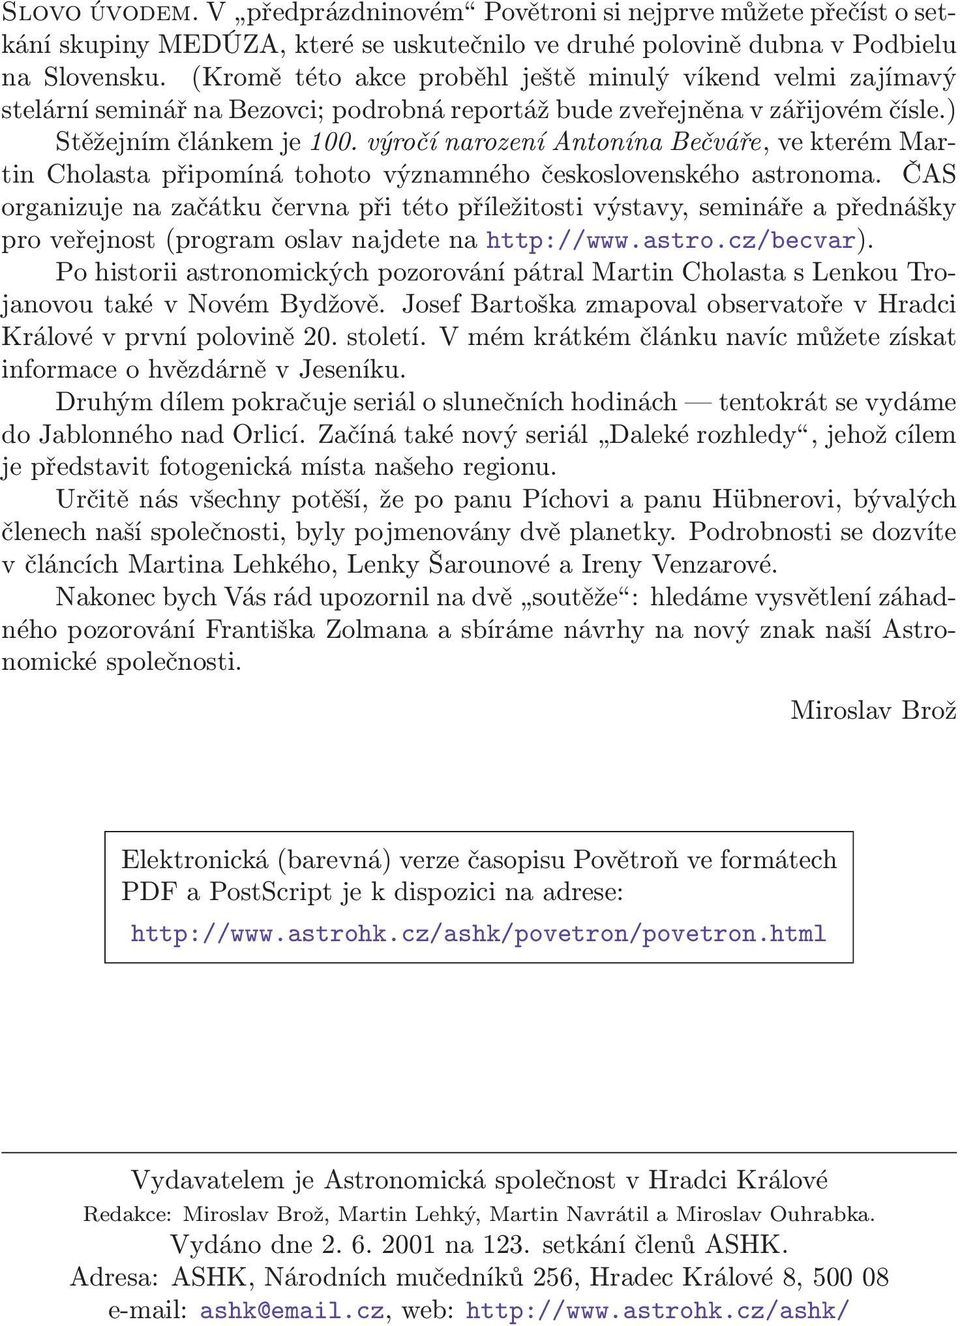 Občasník Astronomické společnosti v Hradci Králové 2001/4 ročník 9 - PDF  Free Download